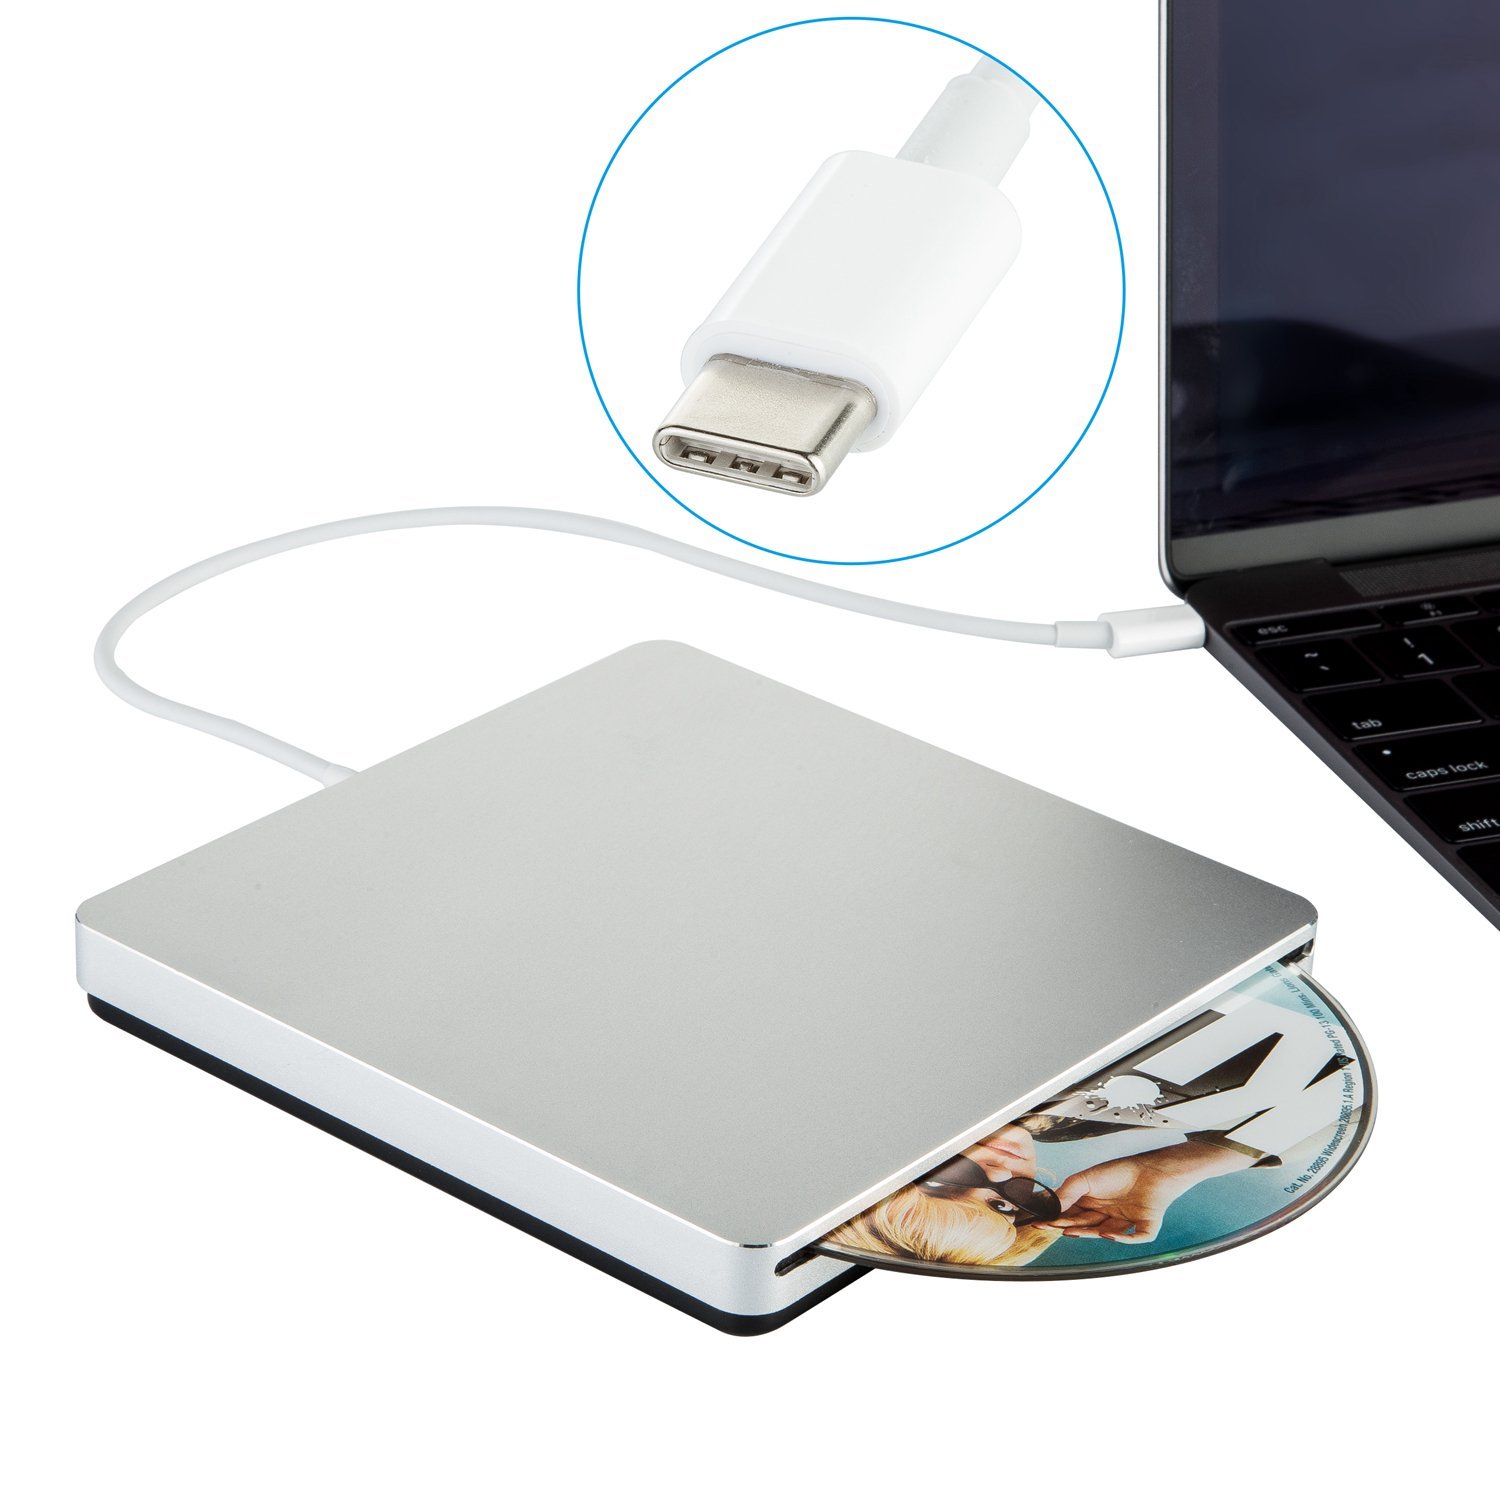 Macbook cd adapter